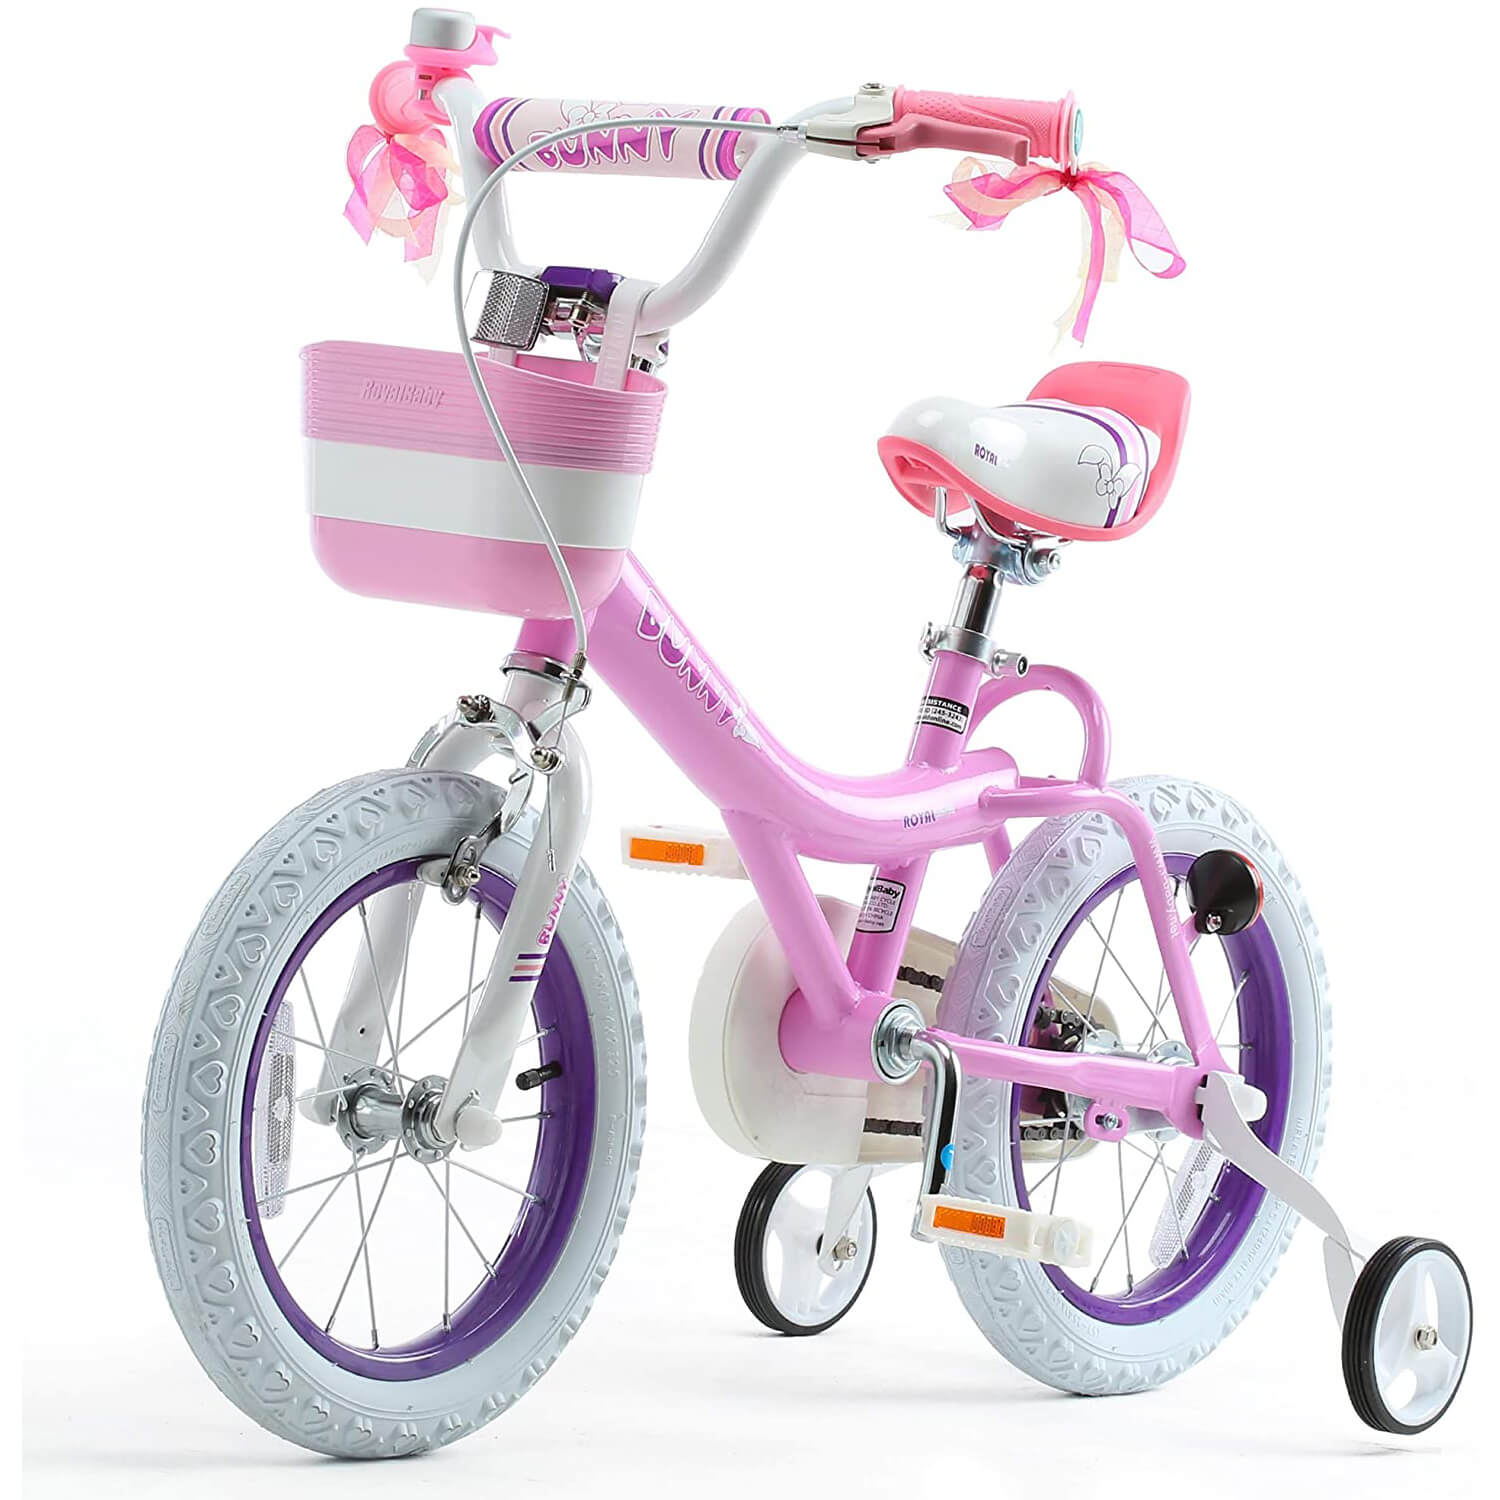 RoyalBaby kids bike bunny girls bike